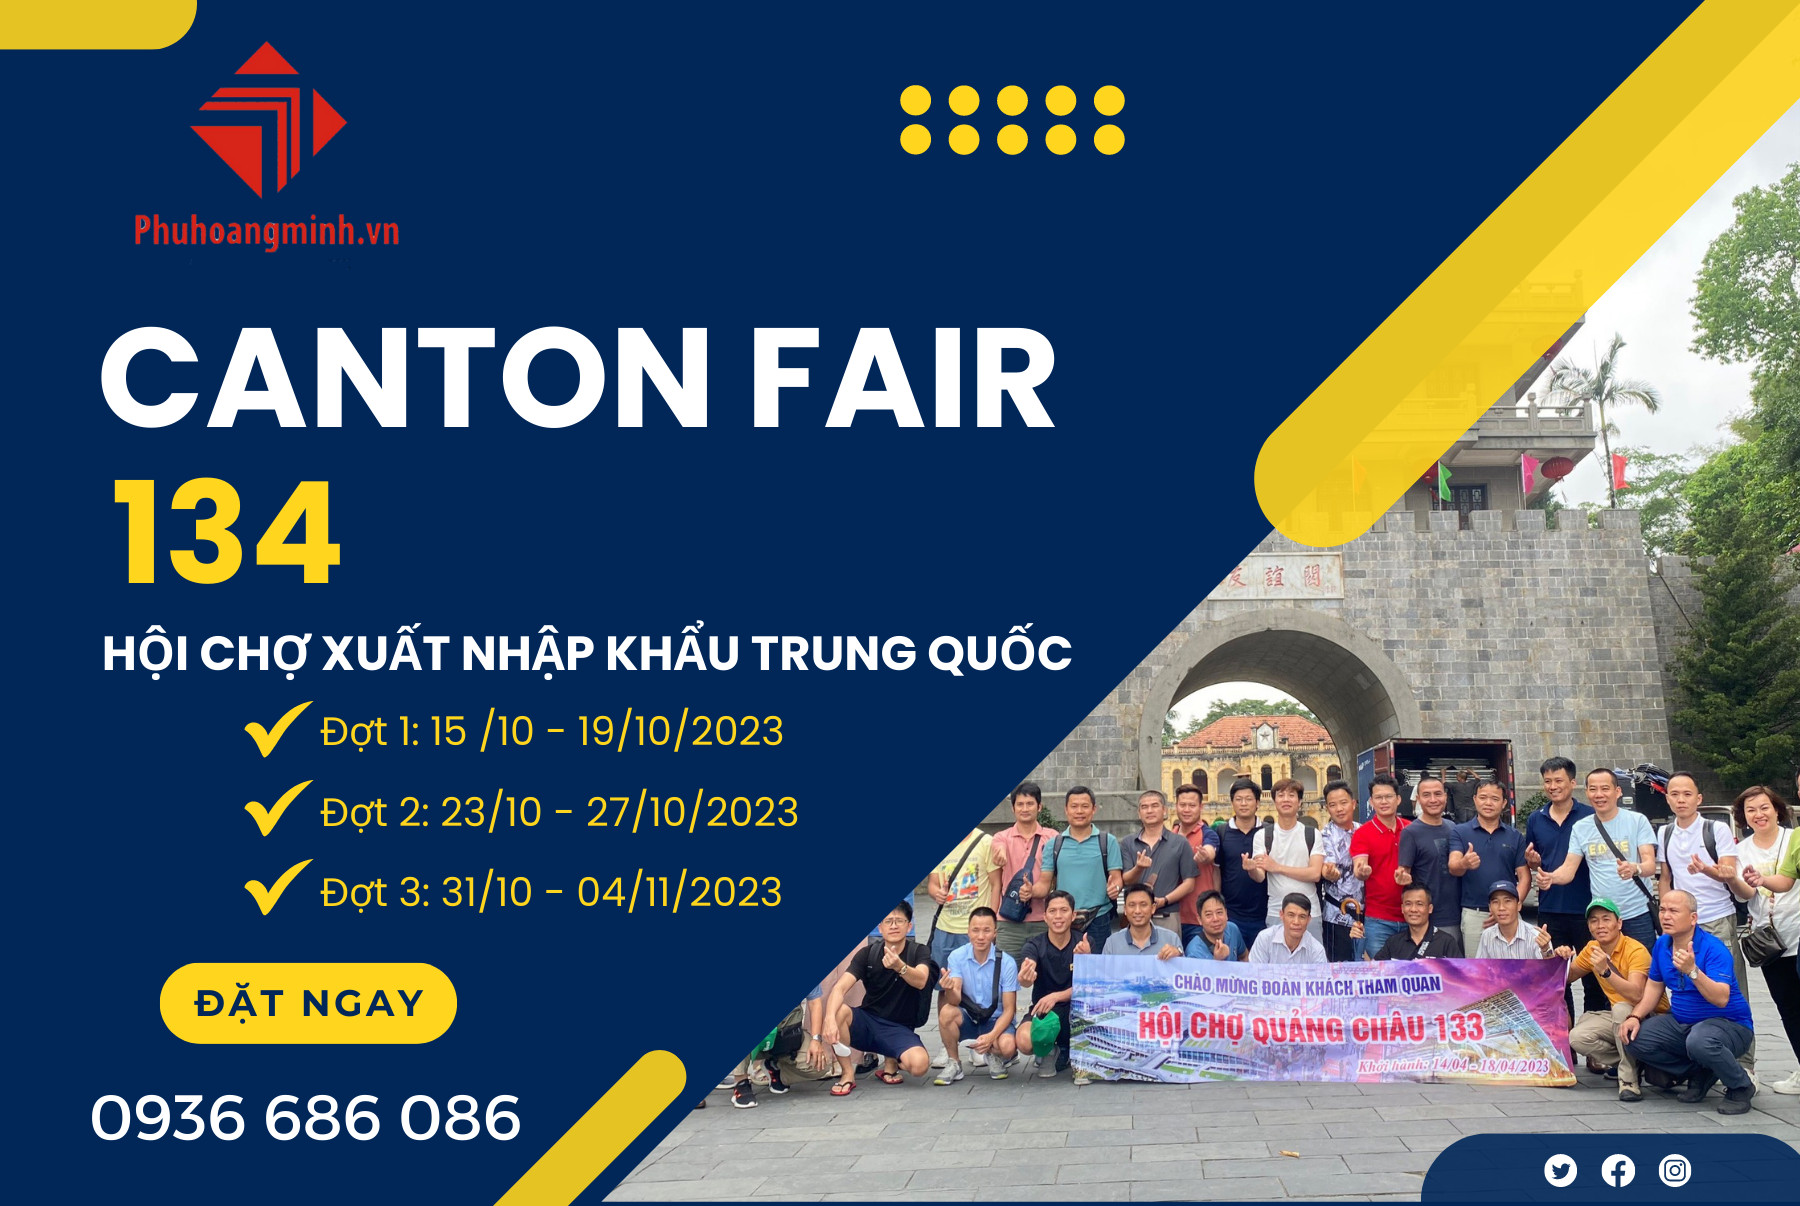 hội chợ canton fair 134 PHM travel